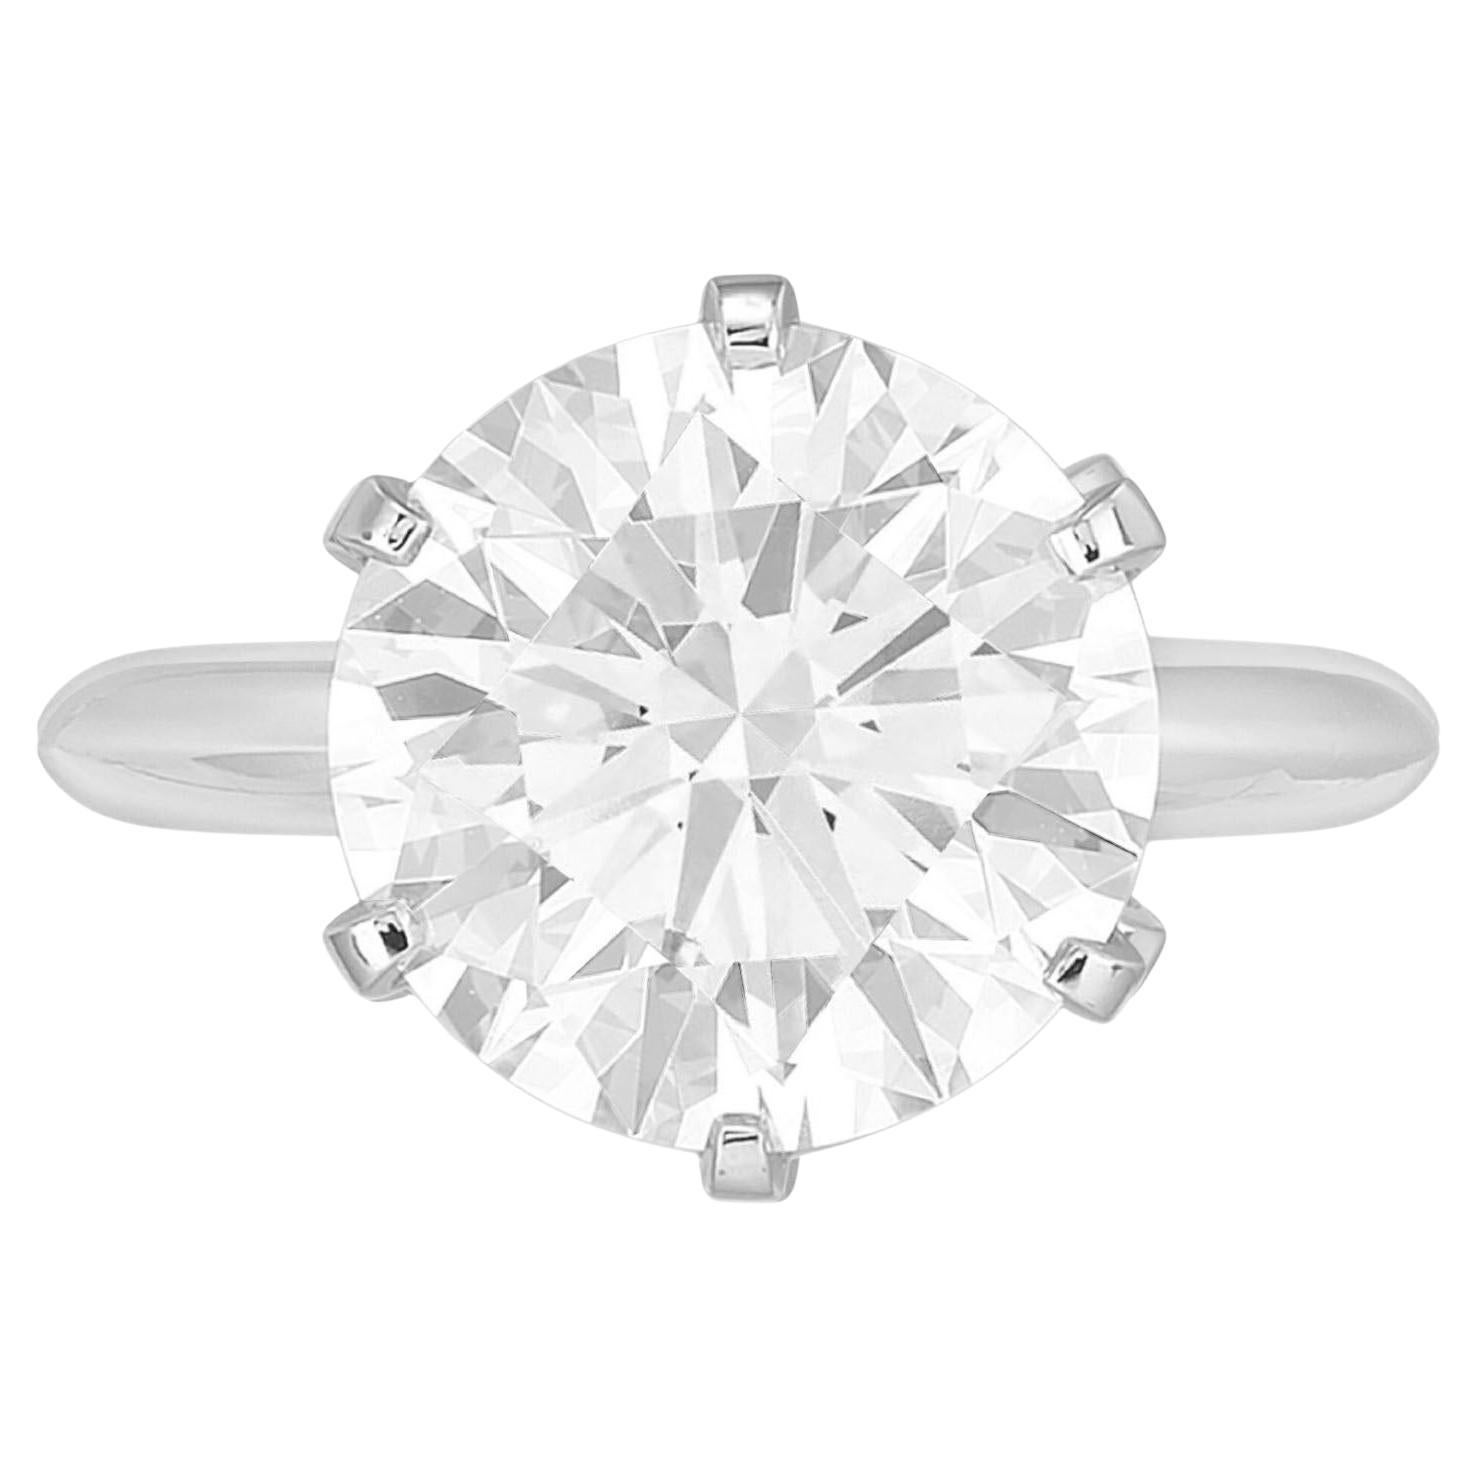 Schmücken Sie sich mit der zeitlosen Eleganz dieses GIA-zertifizierten Solitärrings mit einem runden Diamanten von 5,02 Karat - ein atemberaubendes Symbol für unvergängliche Schönheit und Raffinesse. Das Herzstück dieses exquisiten Rings ist ein